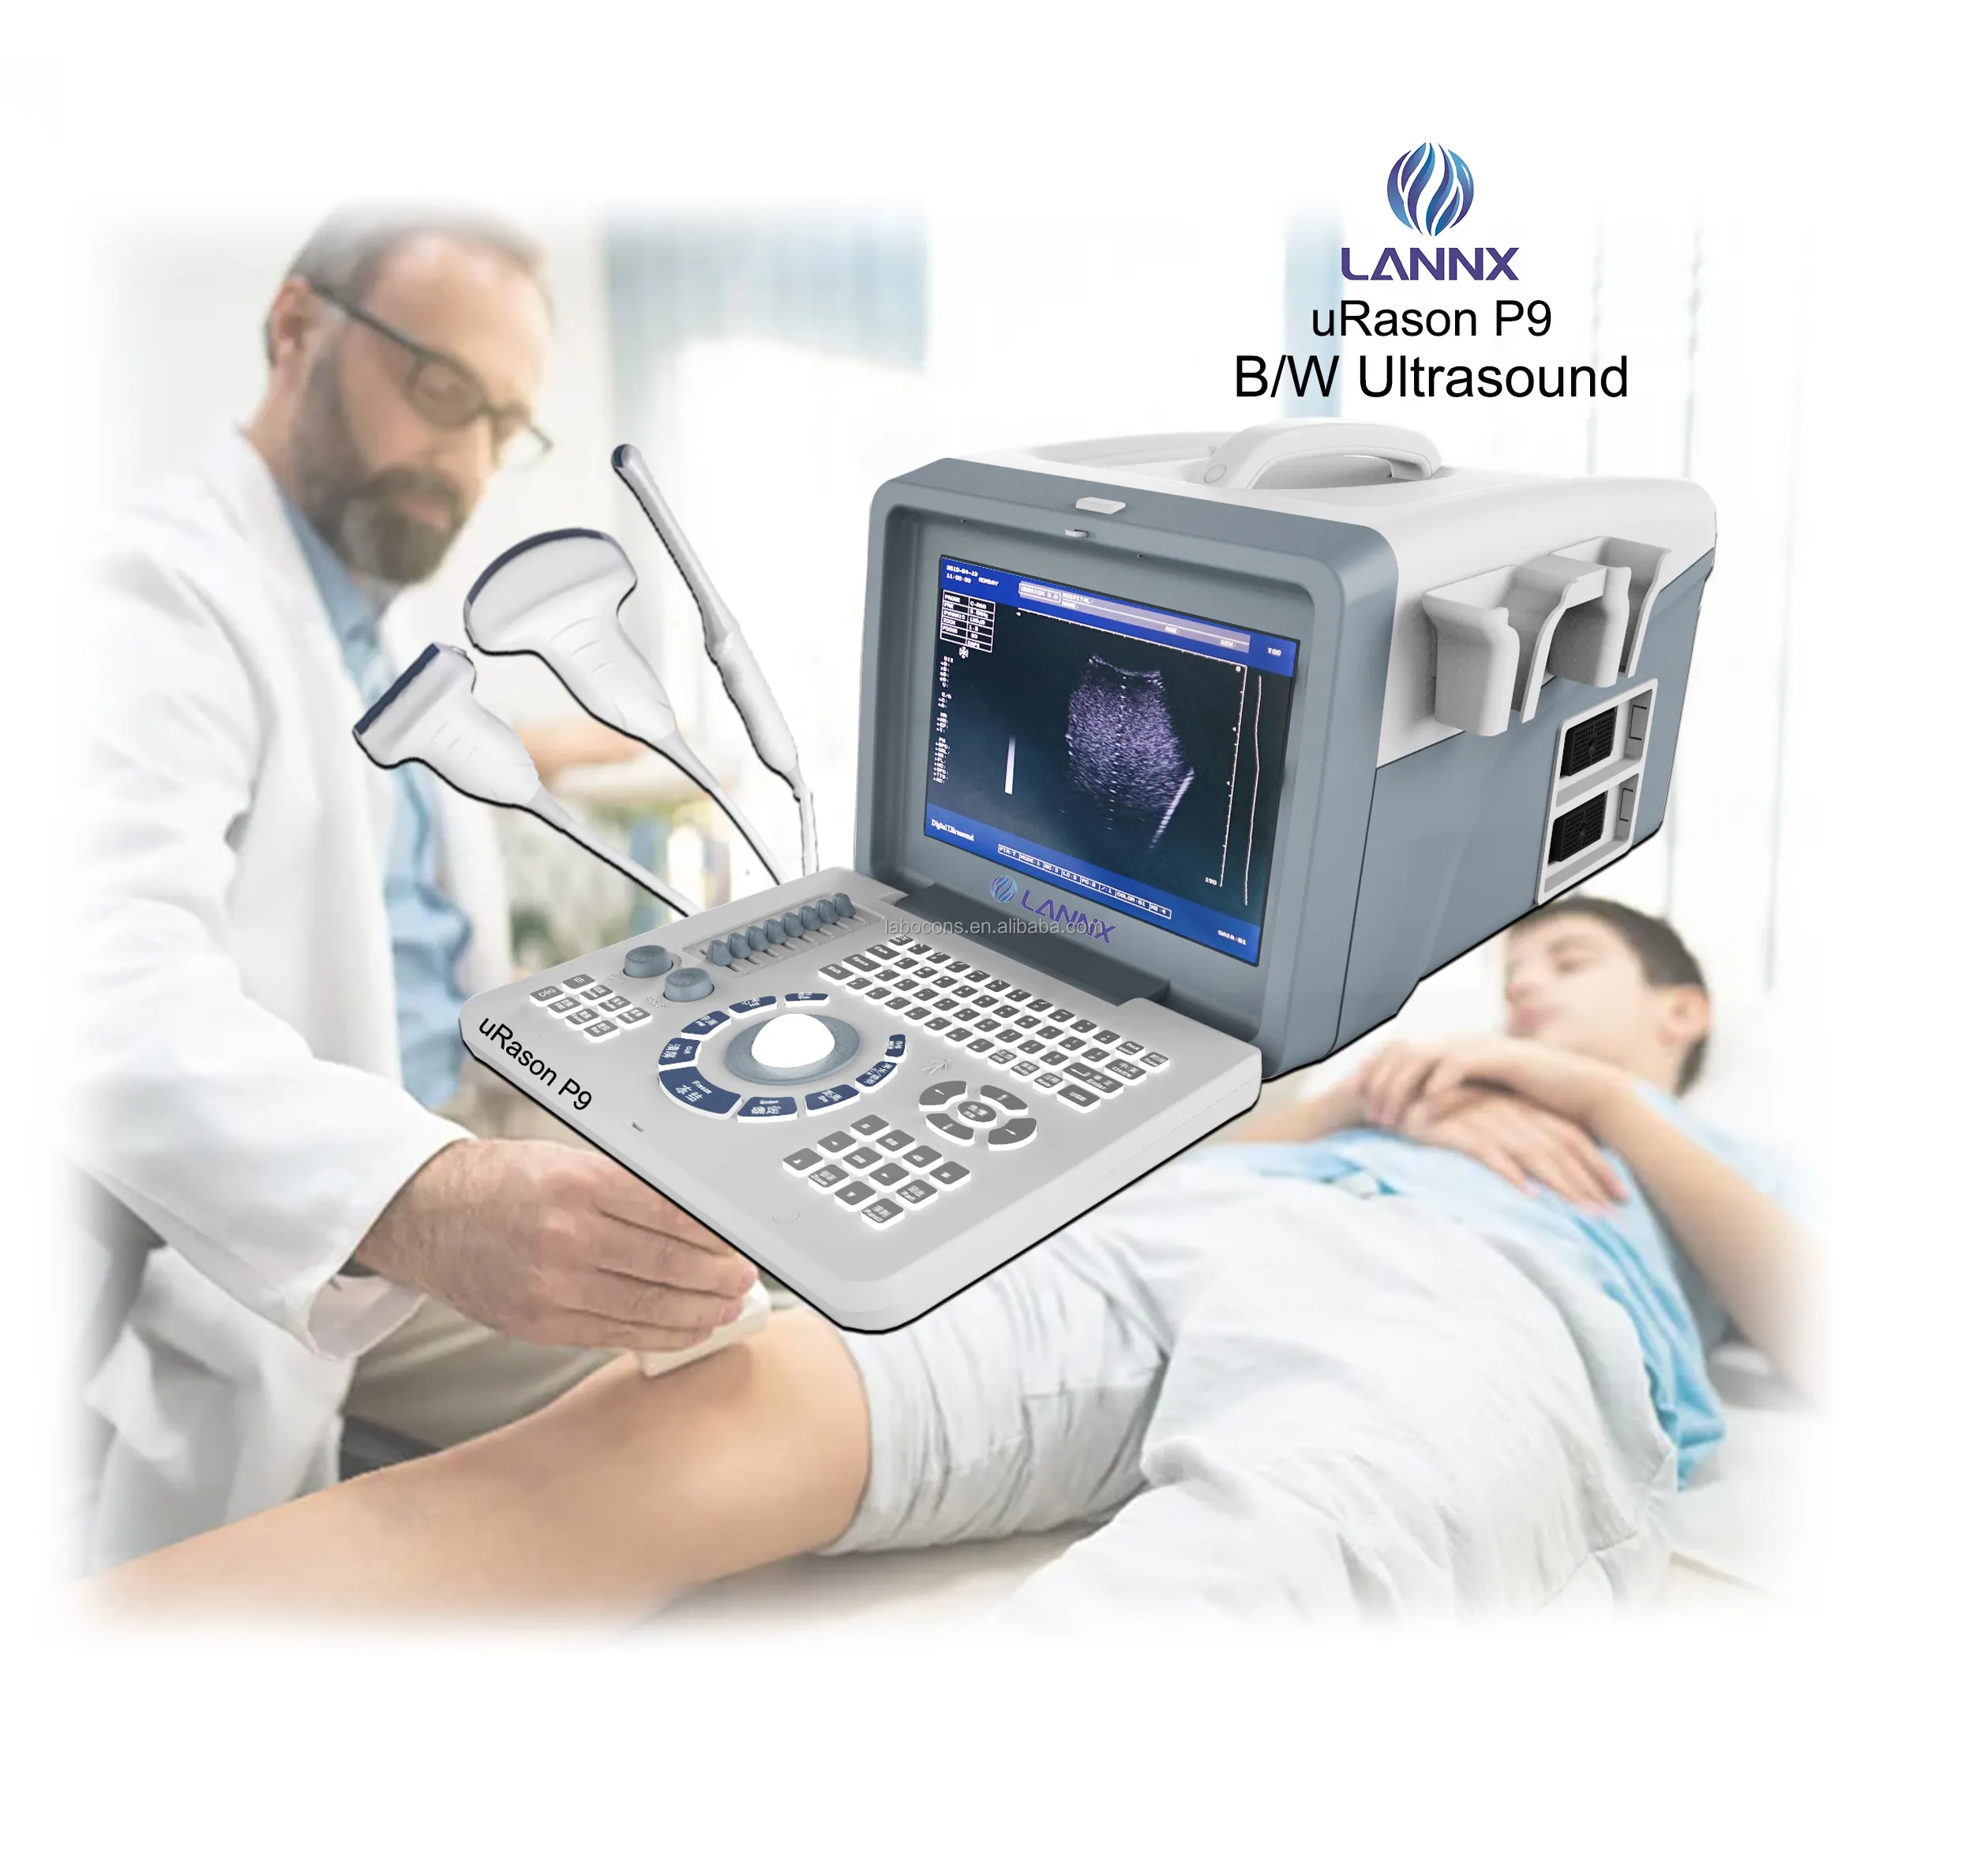 LANNX uRason P9 insan 2D için yeni tasarım hastane ekipmanları ultrason makinesi ultrasonik tanı tarama ekografi